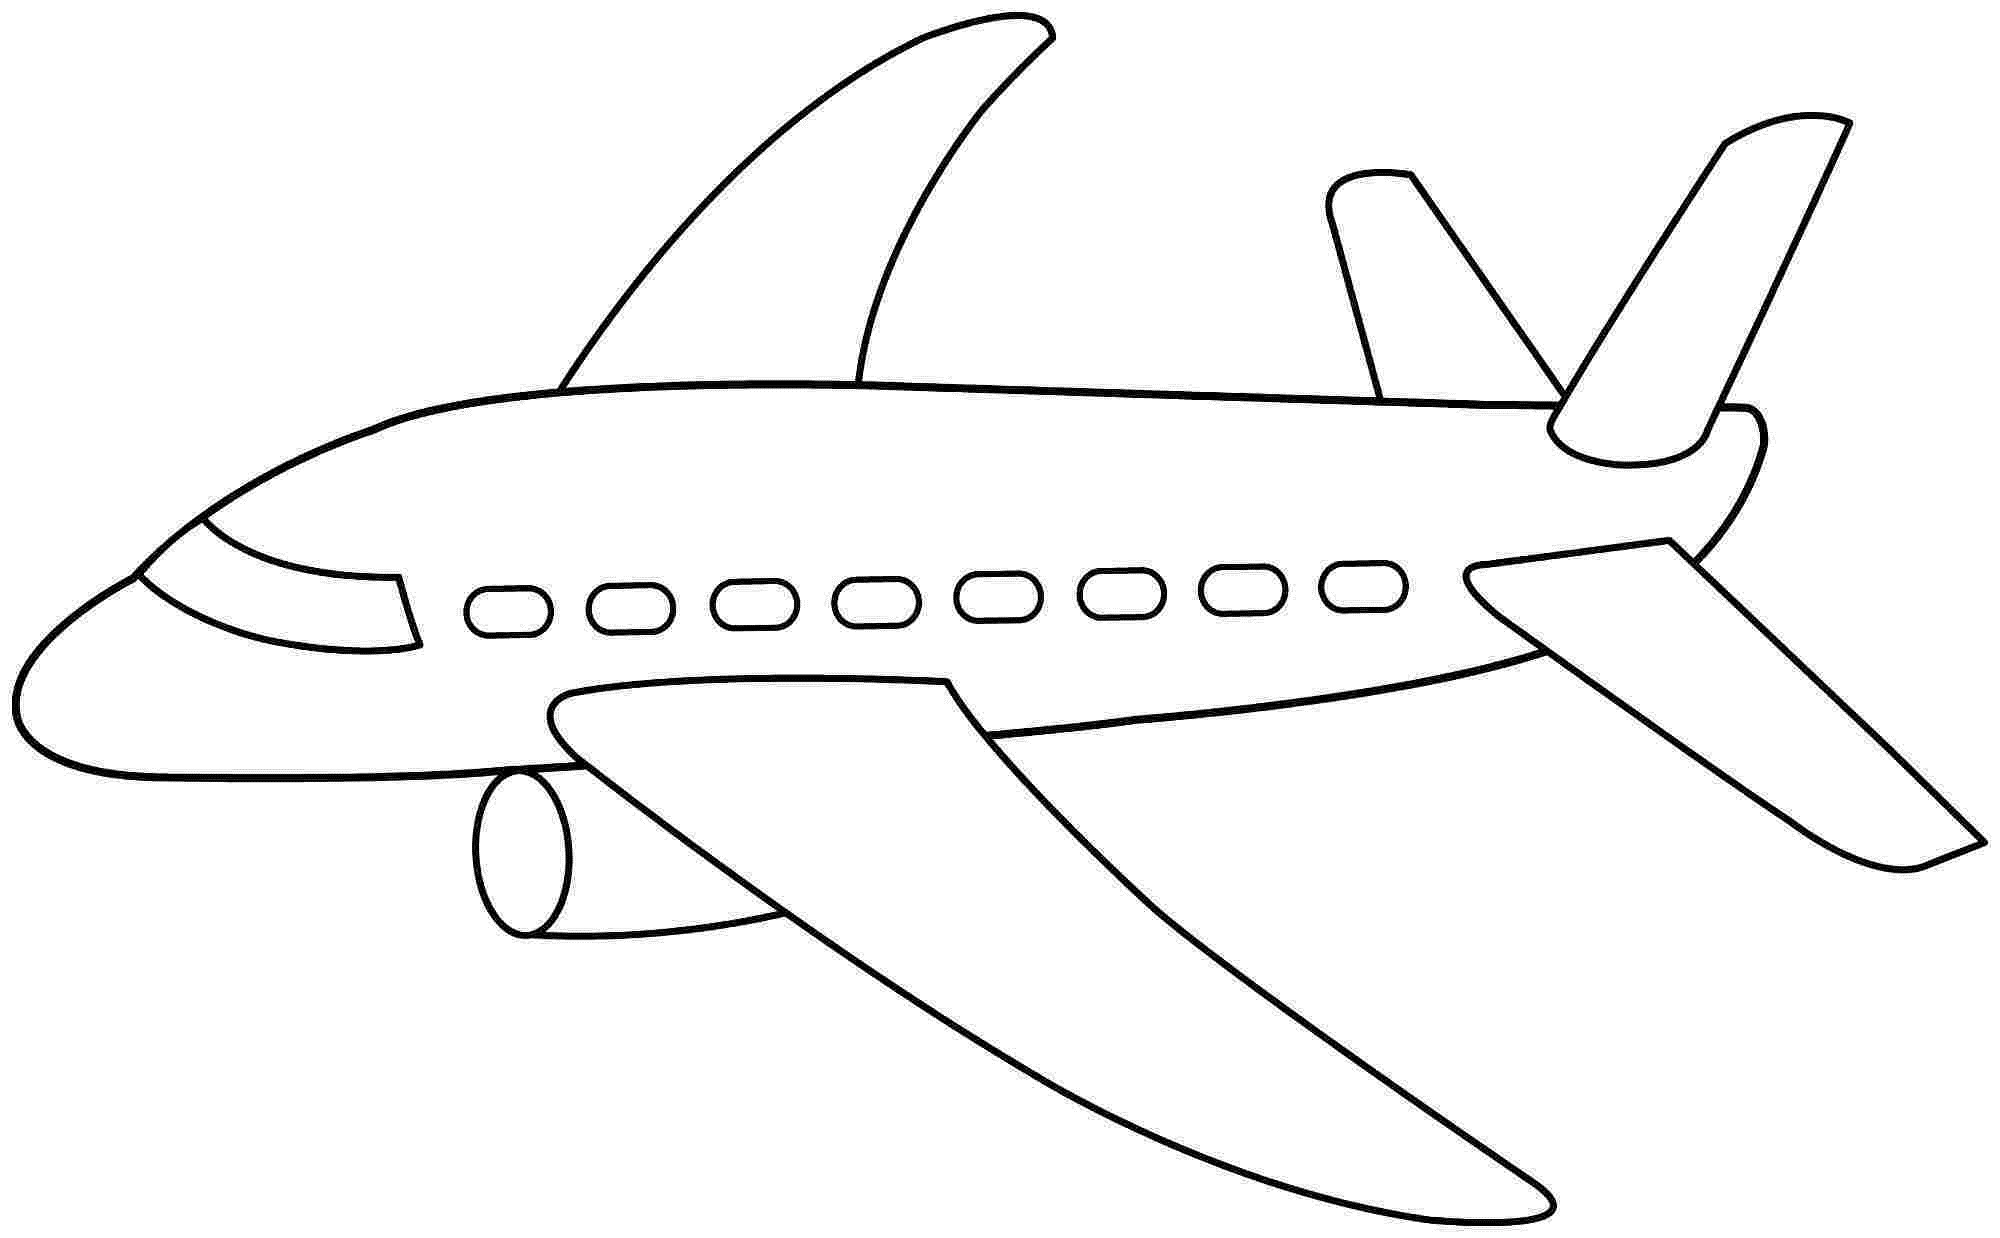 Самолет нарисованный. Самолет рисунок. Самолет раскраска для детей. Рисунок самолета для раскрашивания. Трафарет самолета для рисования.